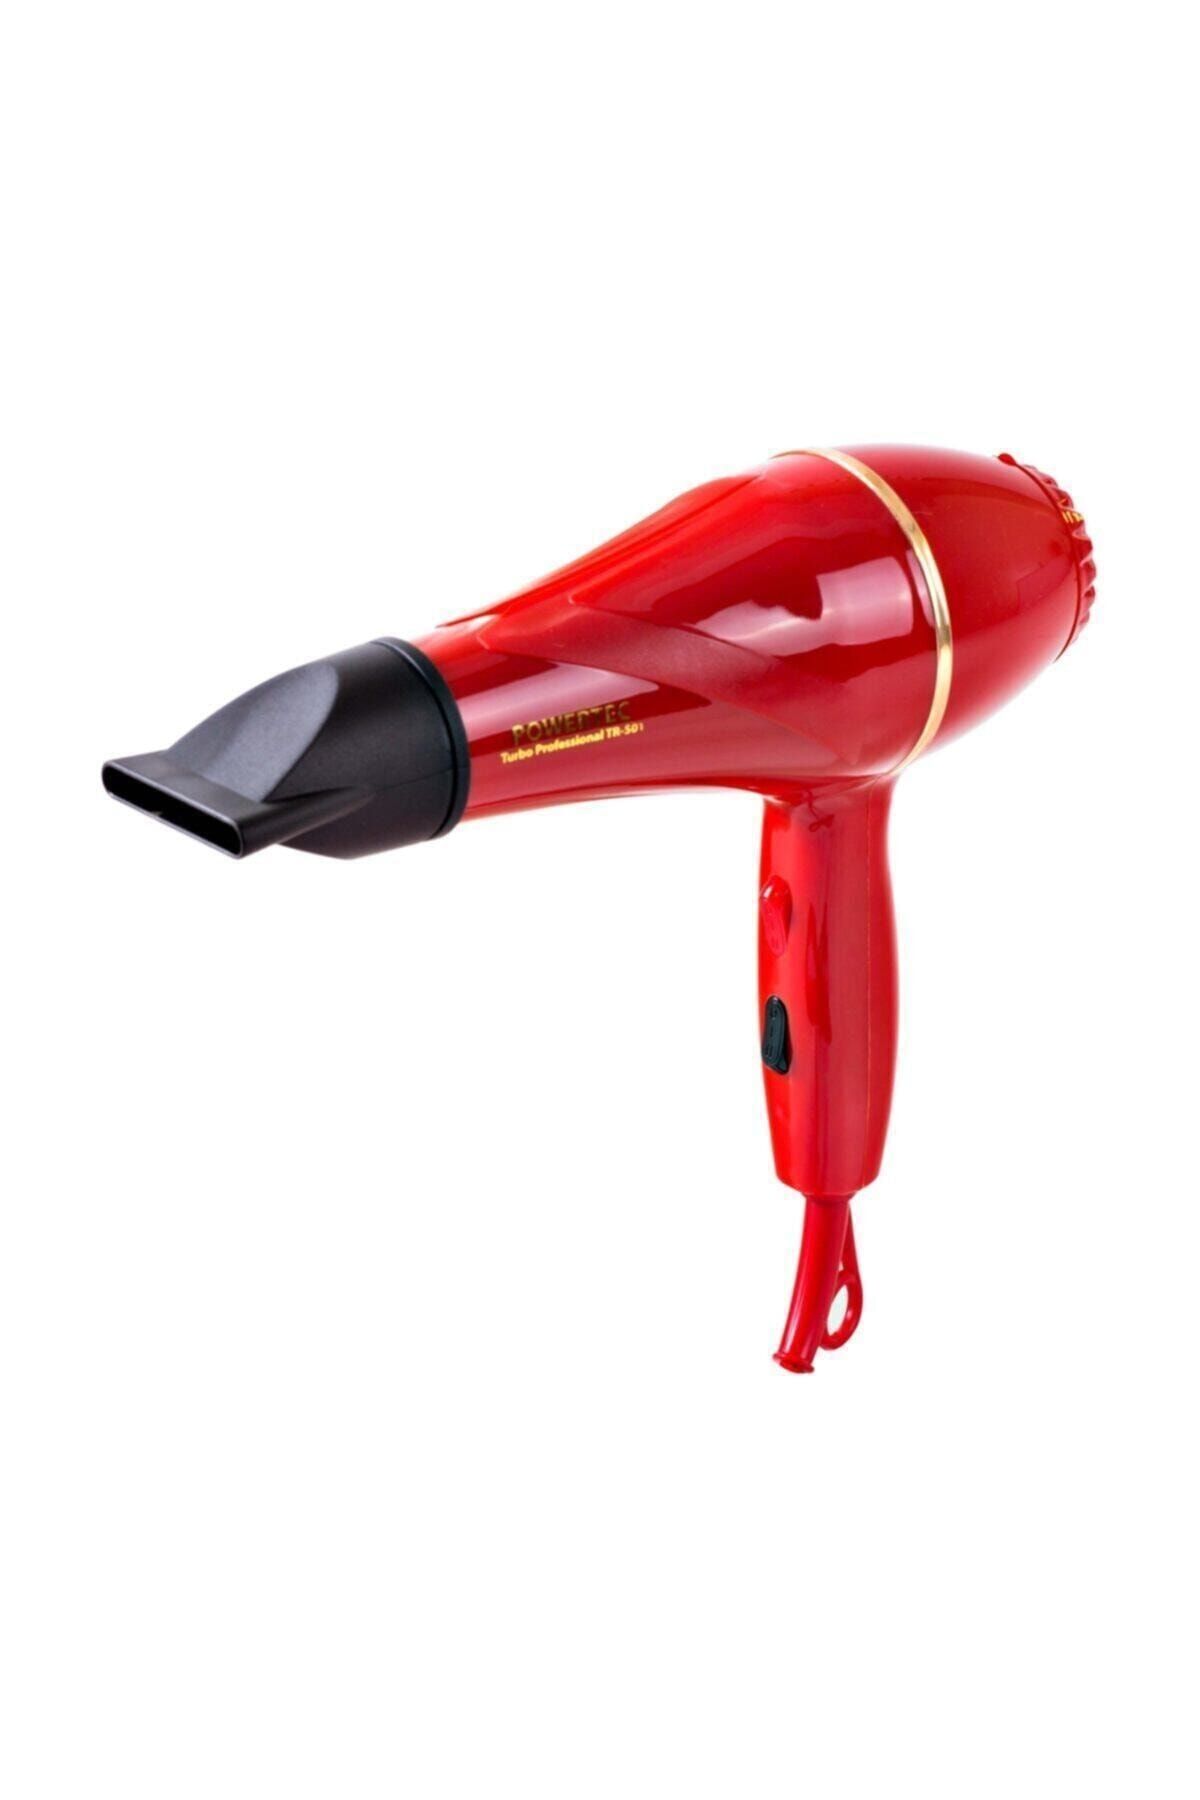 Powertec Kırmızı Profesyonel Kırmızı Tr-501 Fön Saç Kurutma Makinesi Profesyonel 2 Kademeli Yok 220 - 240 V